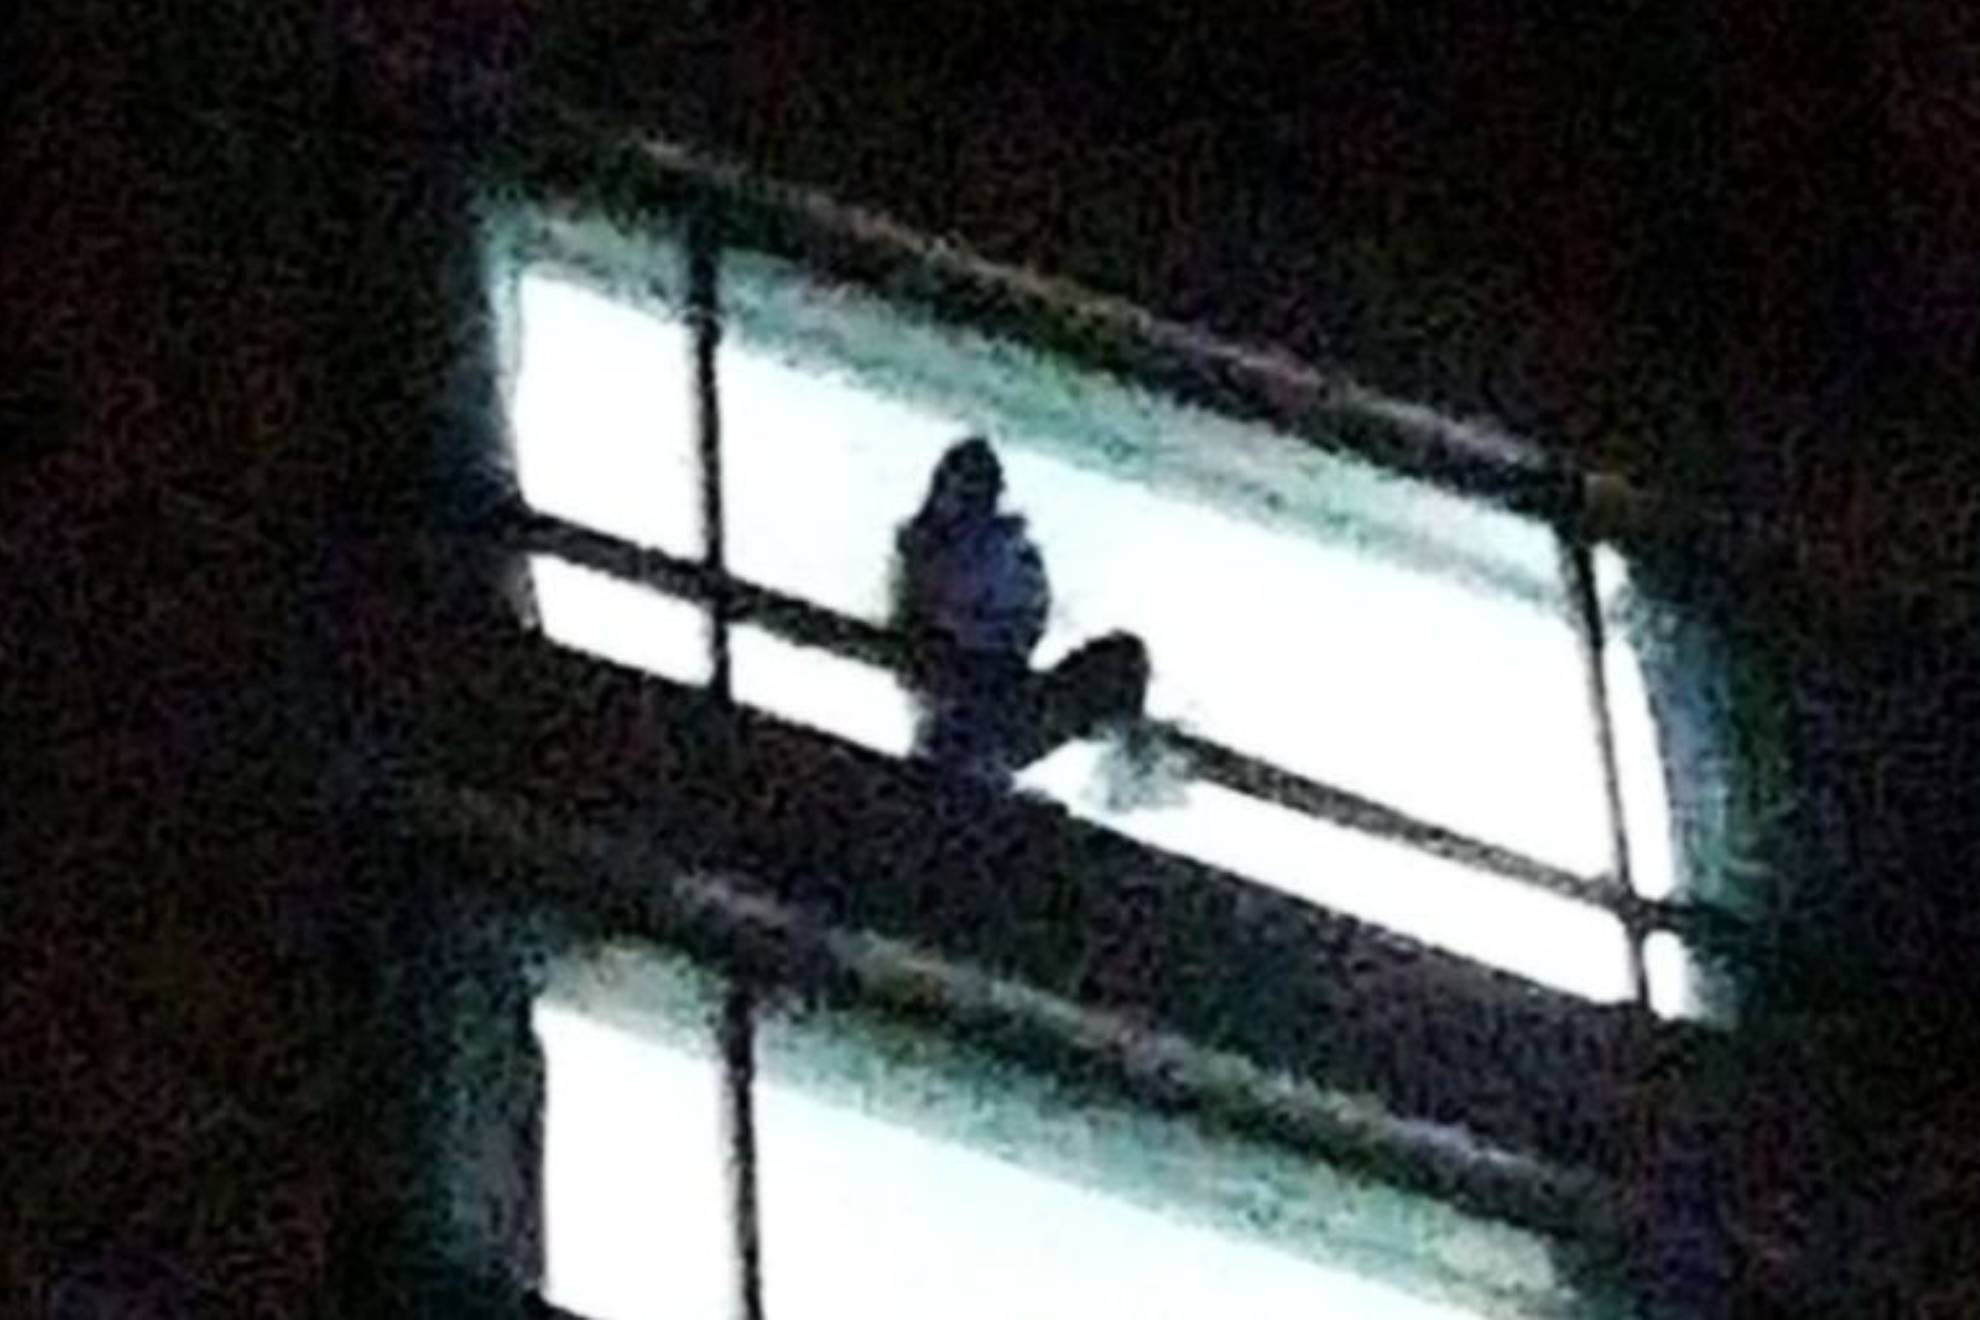 La mujer saltó desde la ventana de la habitación del hotel